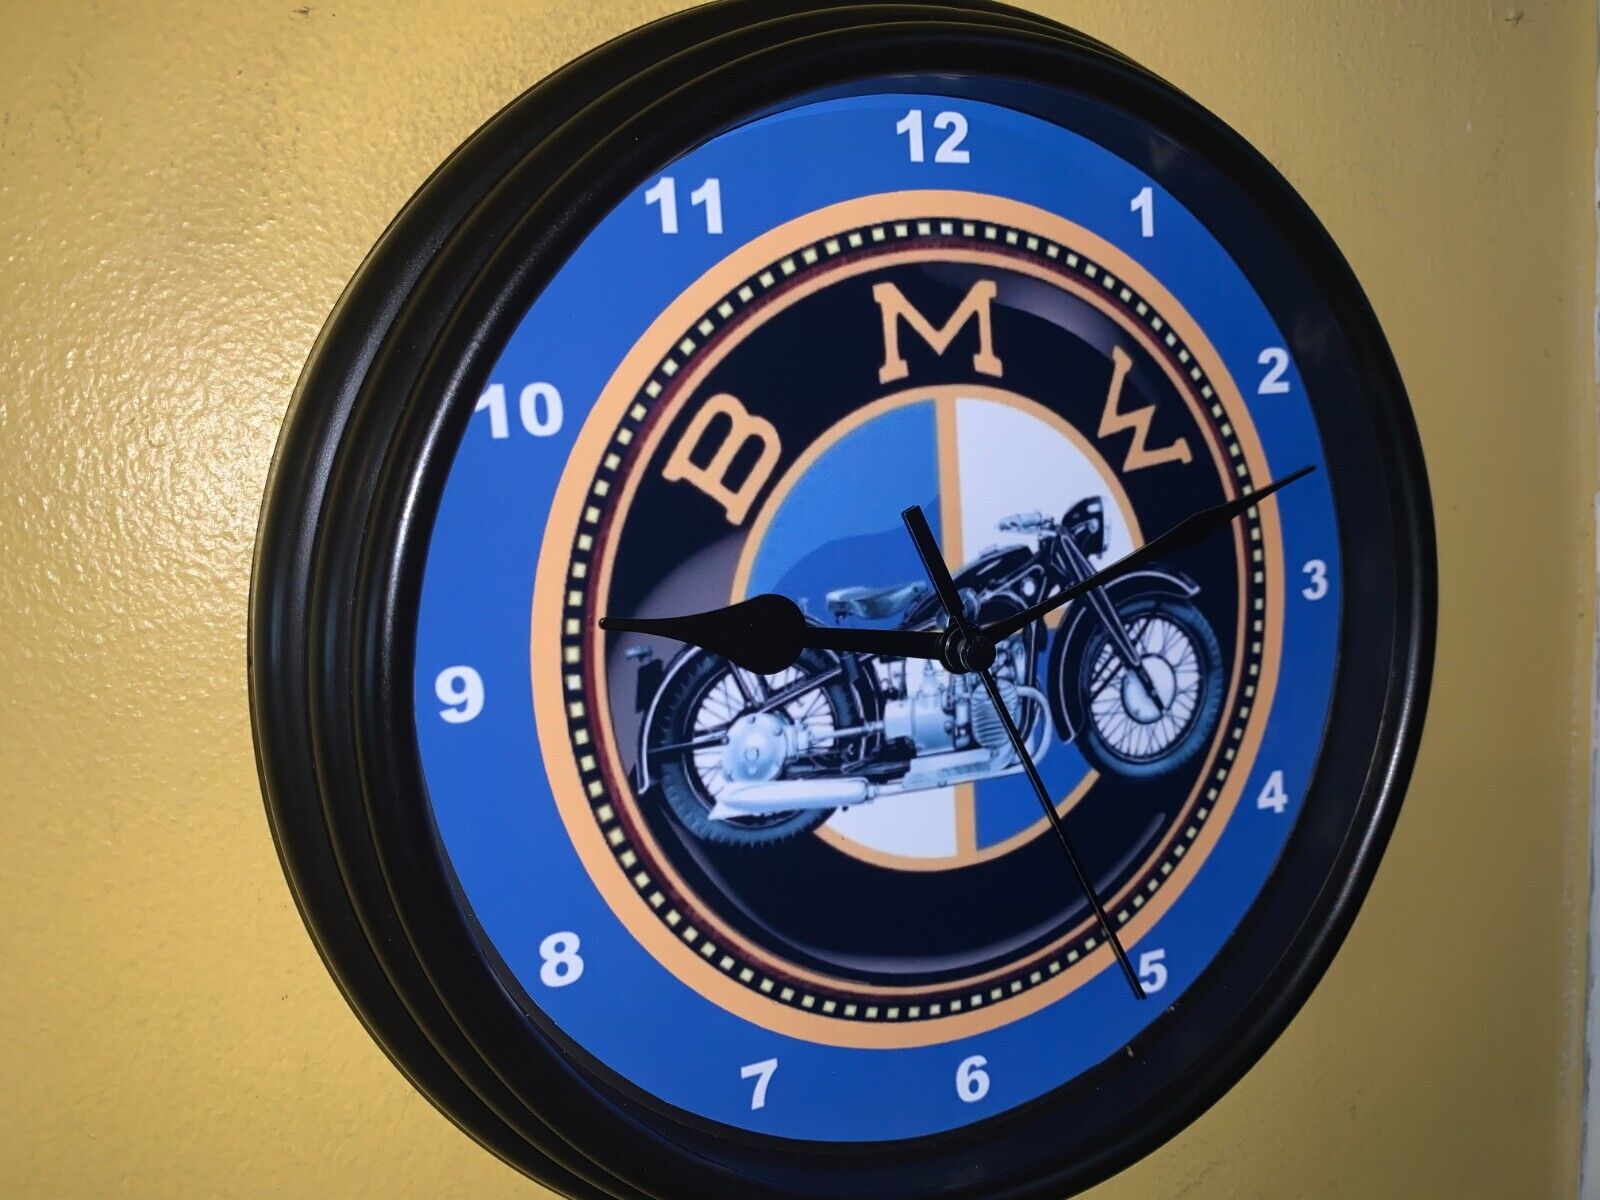 BMW Motorcycle Dealership Garage Man Cave Advertising Clock Sign